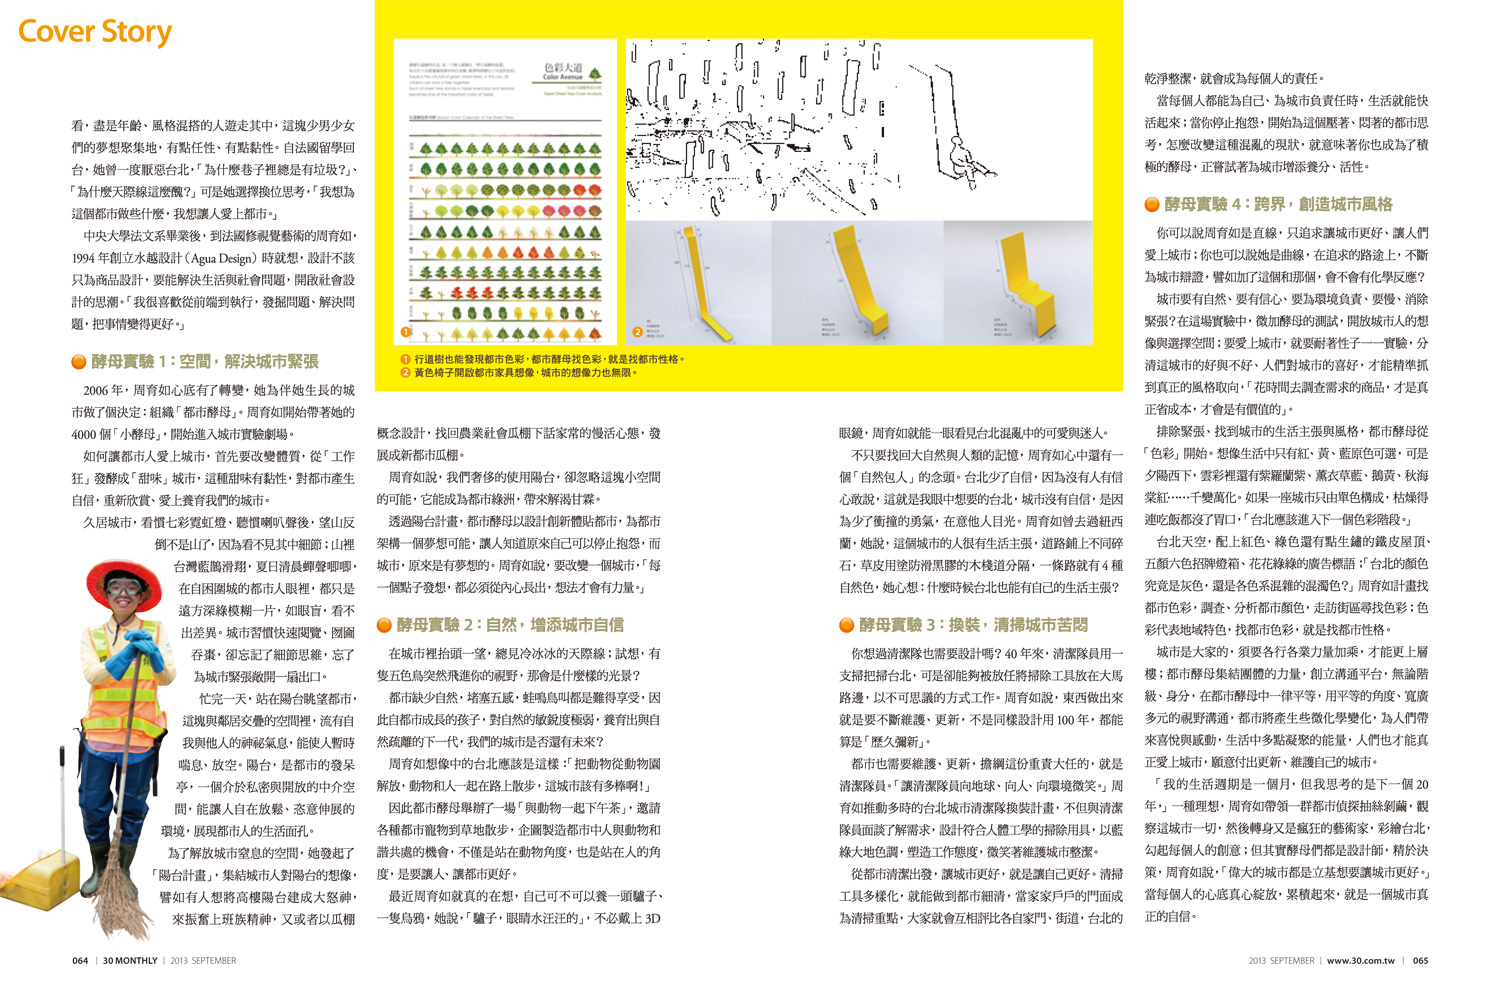 水越設計,  都市酵母, city yeast, AGUA Design, 30雜誌, 5月天, 30個影響台灣的聲音